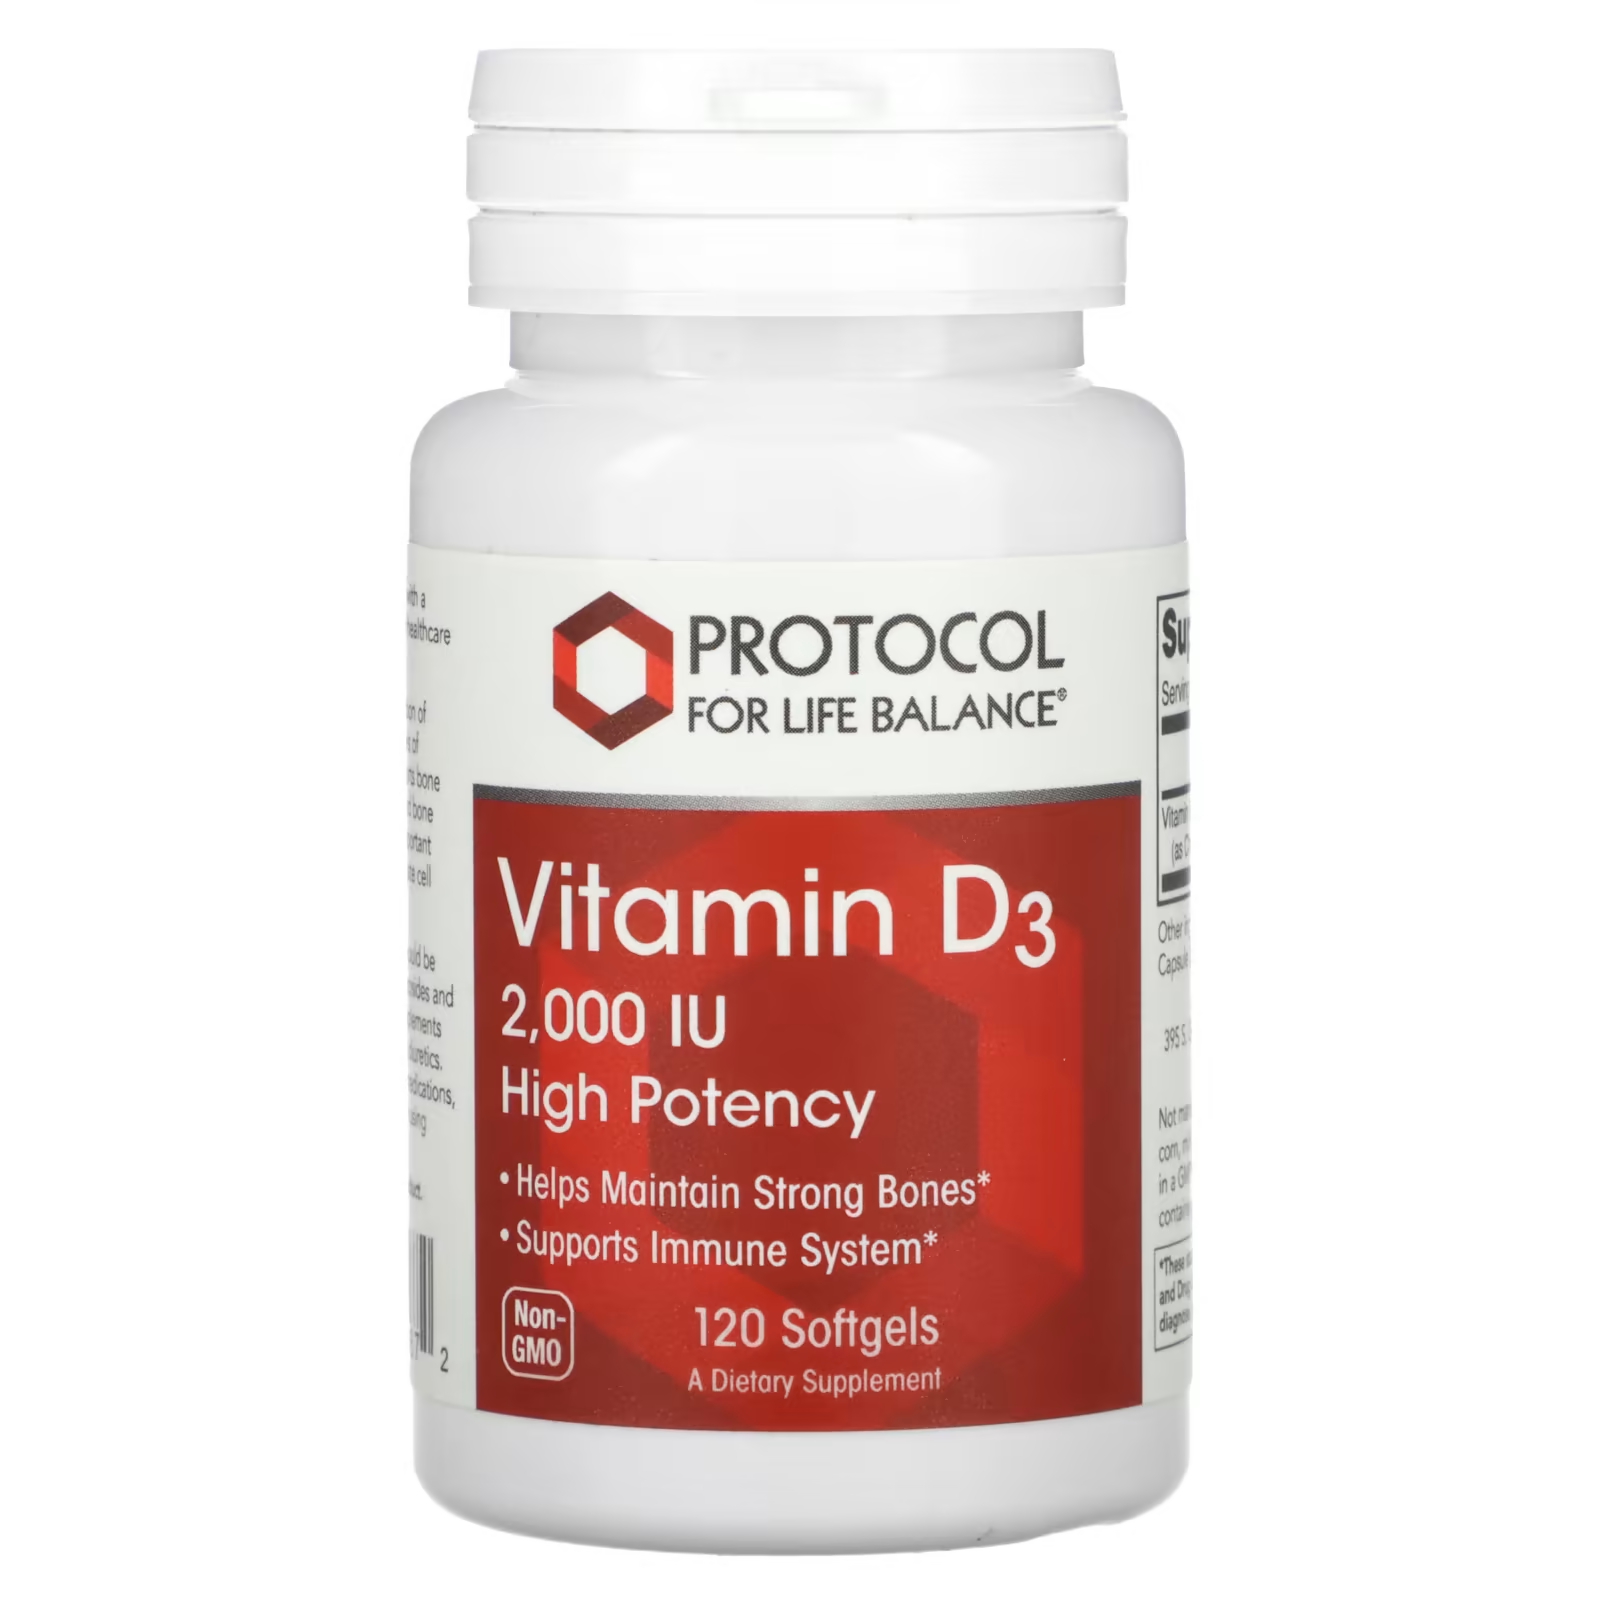 Витамин D3 Protocol for Life Balance высокая эффективность 2000 МЕ, 120 мягких таблеток жидкий витамин d3 protocol for life balance повышенной силы 30 мл